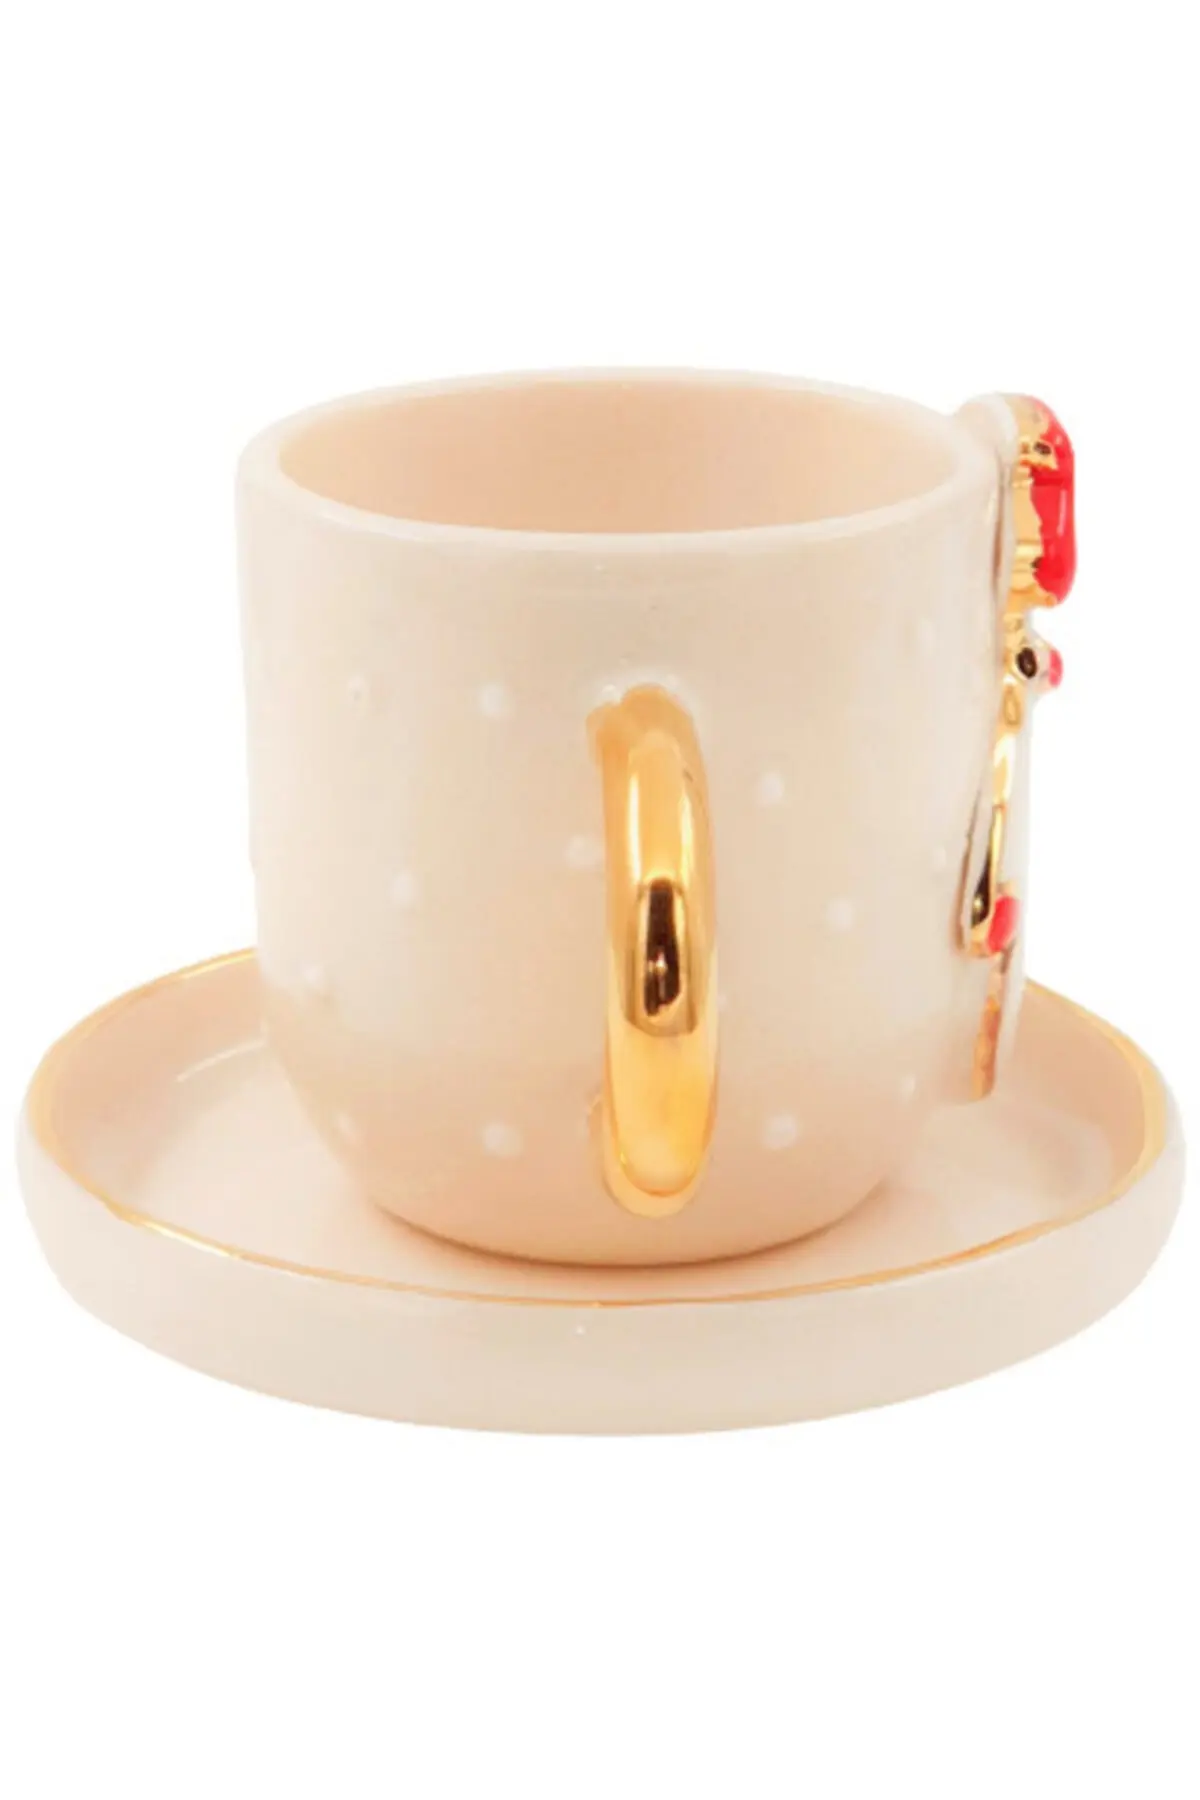 فنجان قهوه خوری طلاکاری شده طرح آدم برفی کریسمس همراه نعلبکی شیری طلایی 